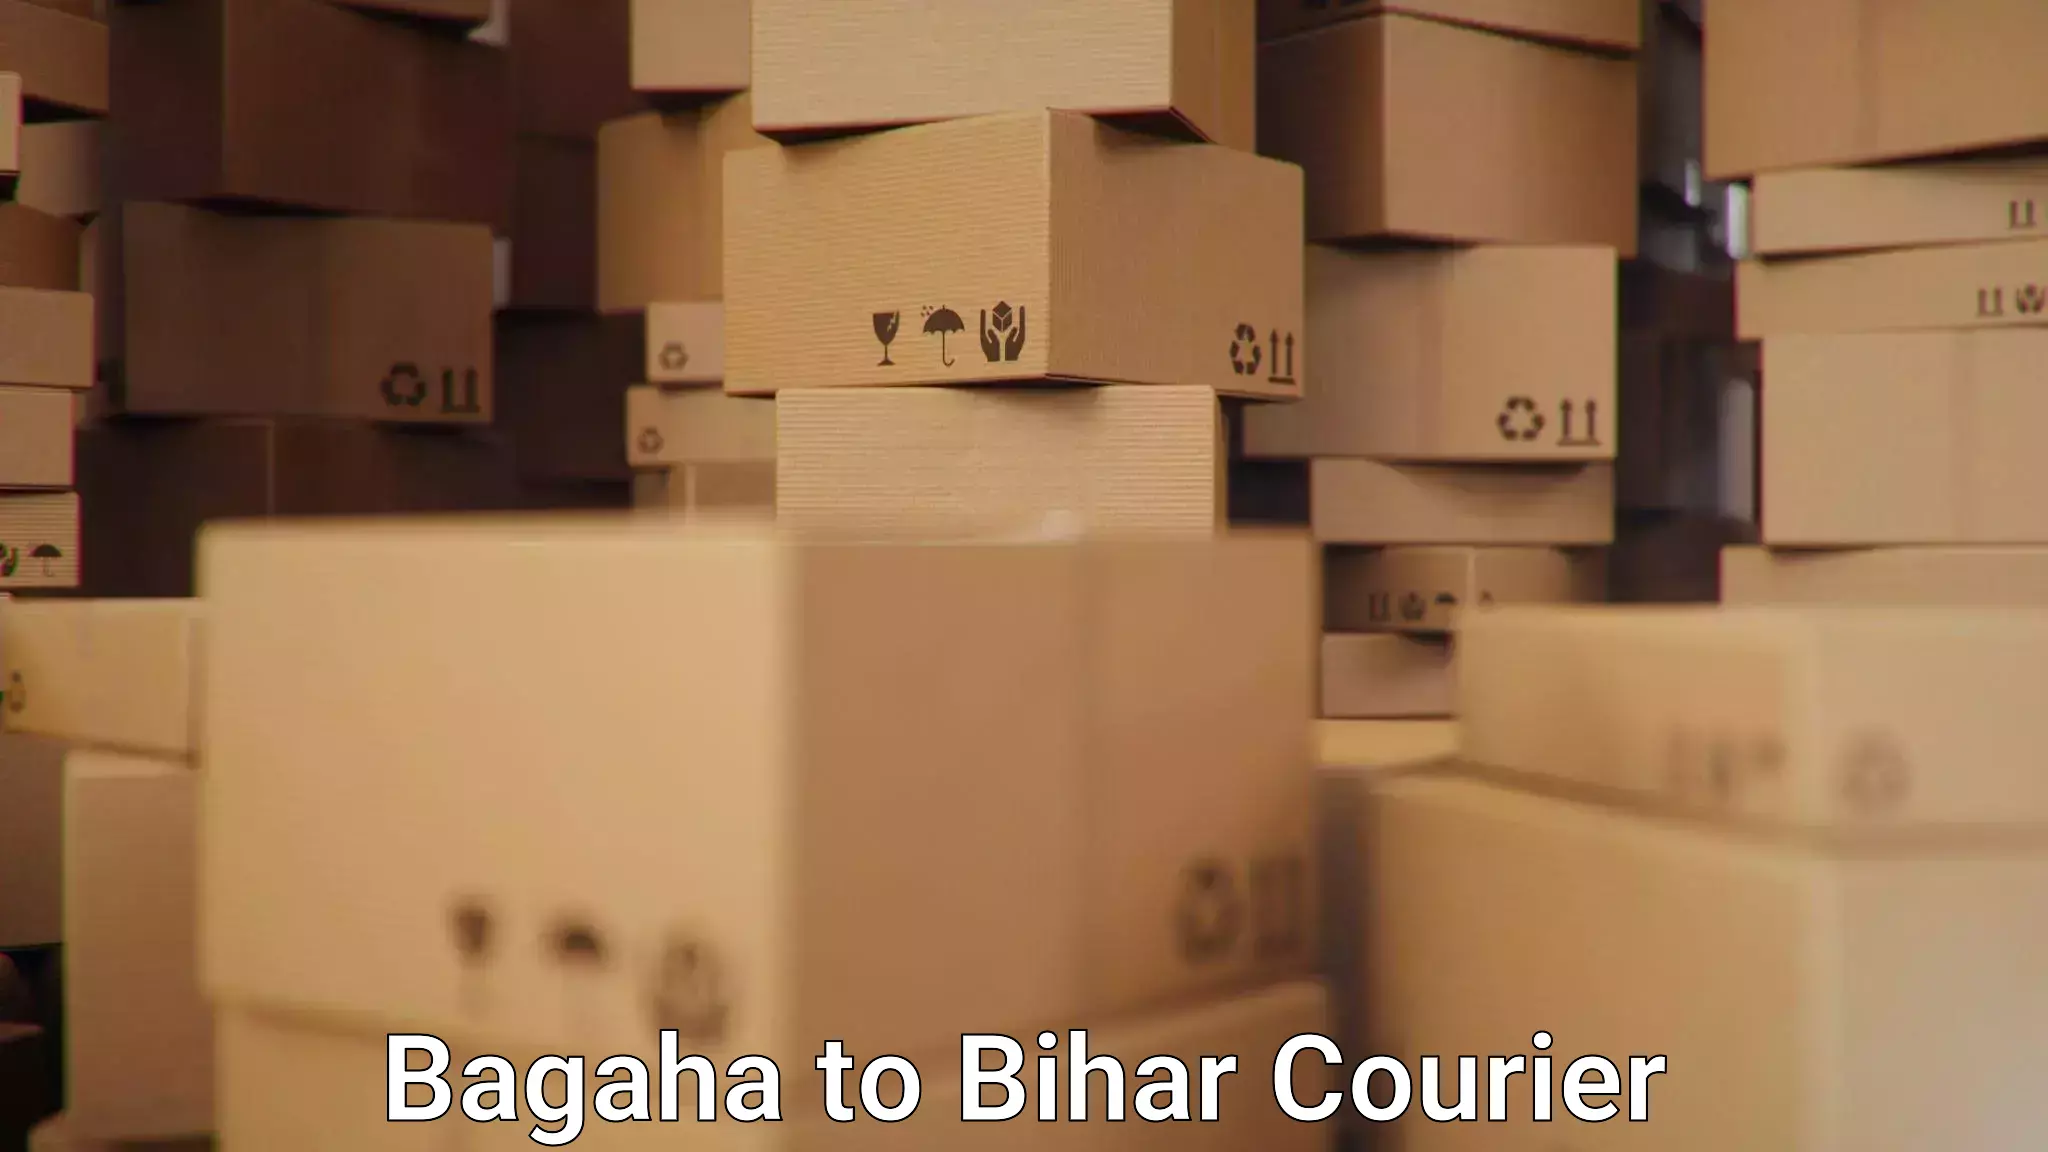 Nationwide shipping services Bagaha to Jhajha